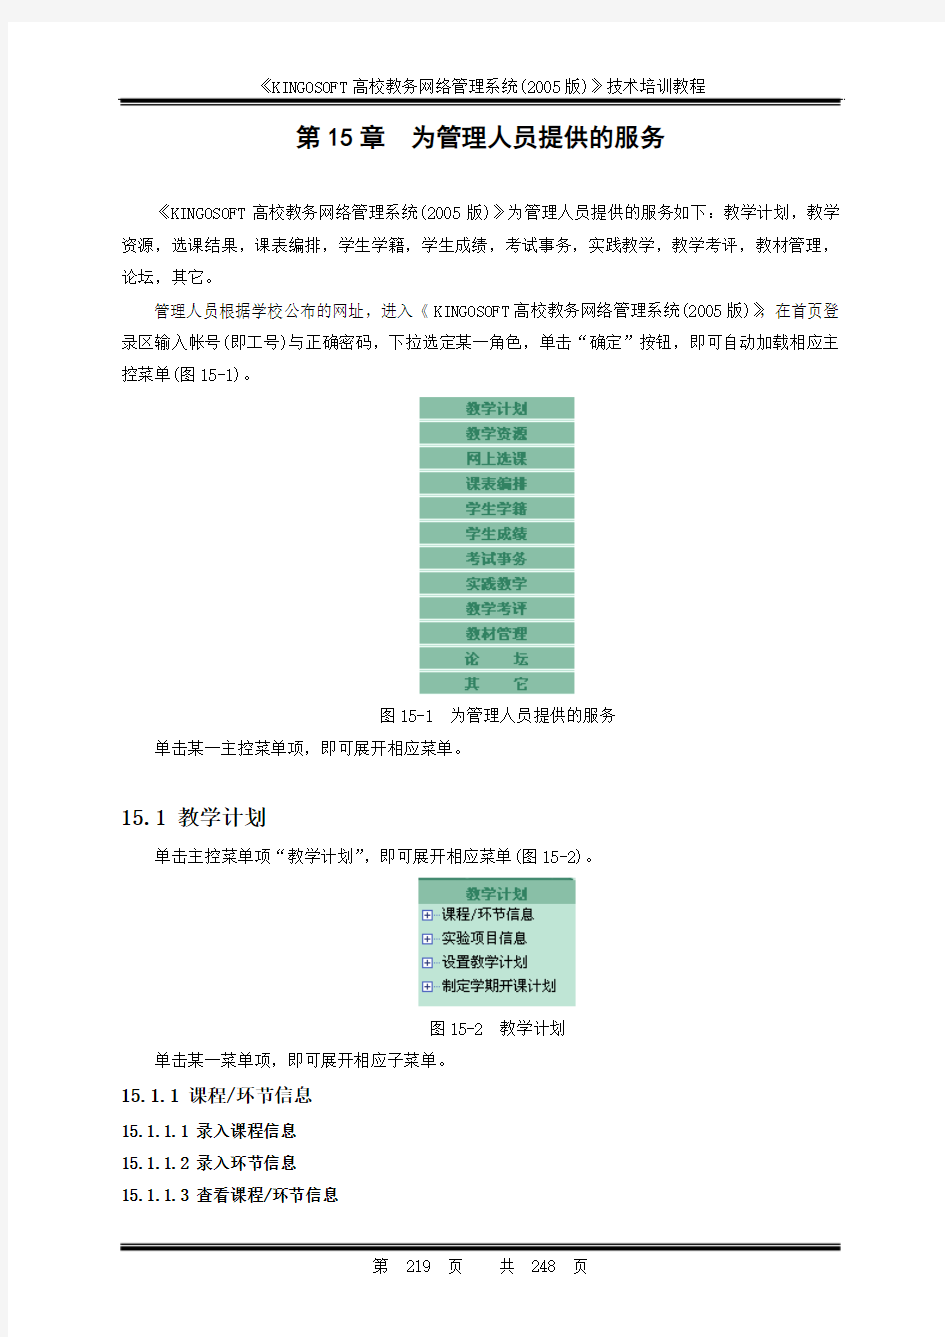 广西外国语学院教务网络管理系统管理人员使用手册